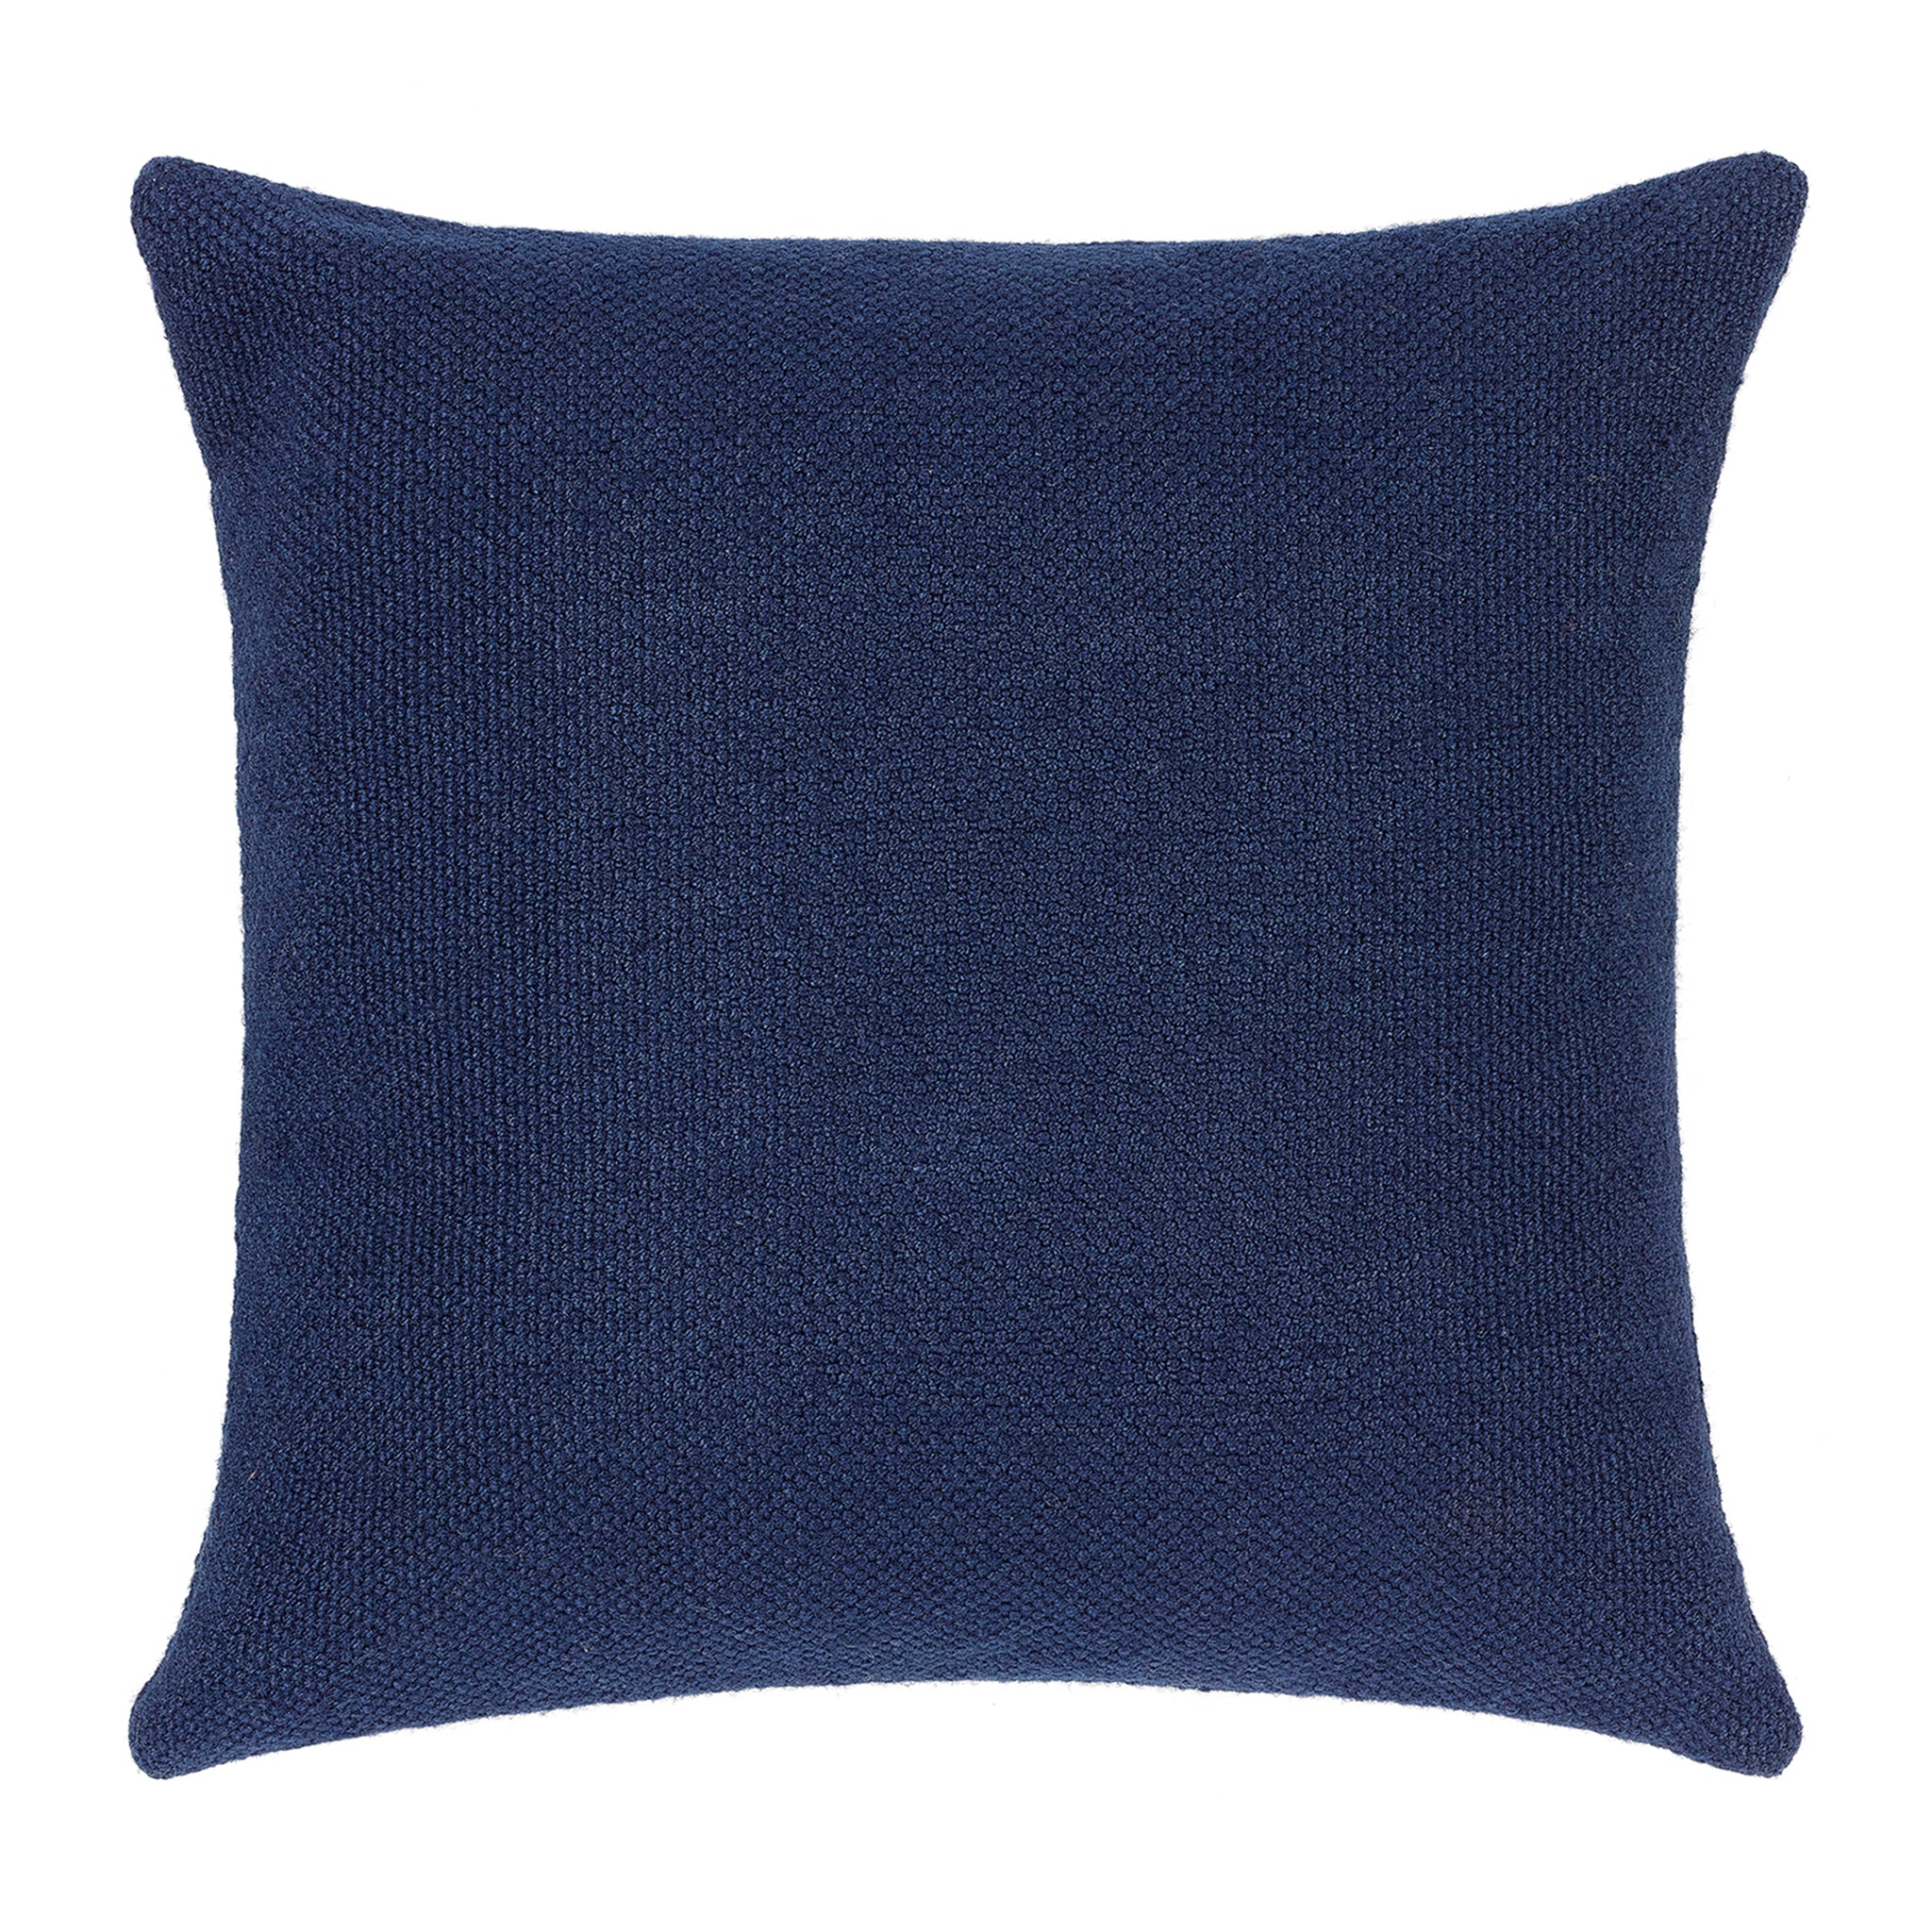 Navy plain cushion